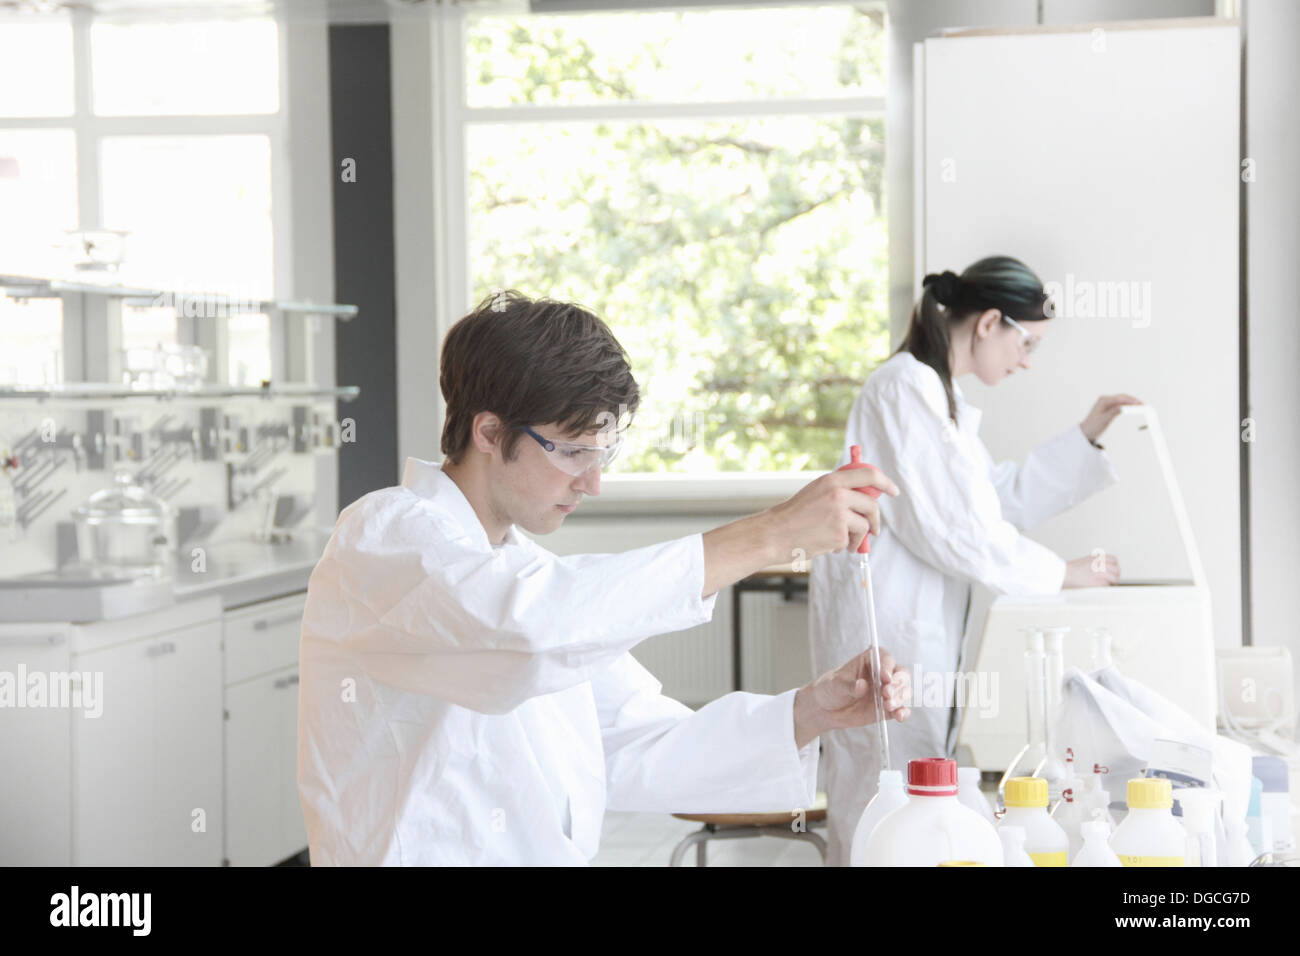 Los estudiantes de química en el trabajo en el laboratorio Foto de stock